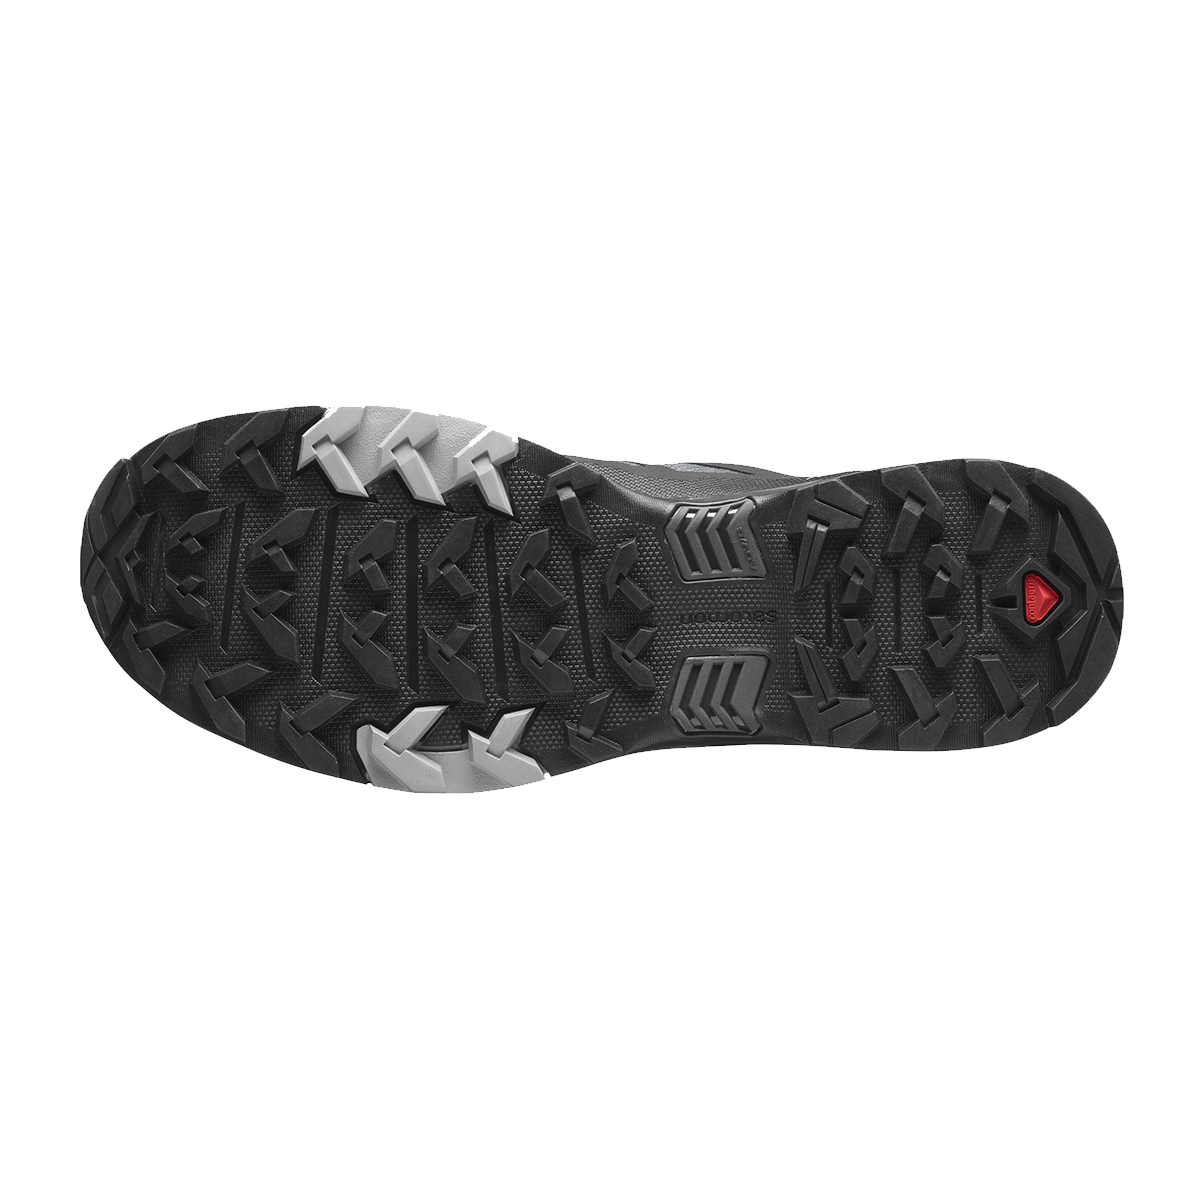 Salomon X Ultra 4 Gtx Outdoor Ayakkabı (L41385100)